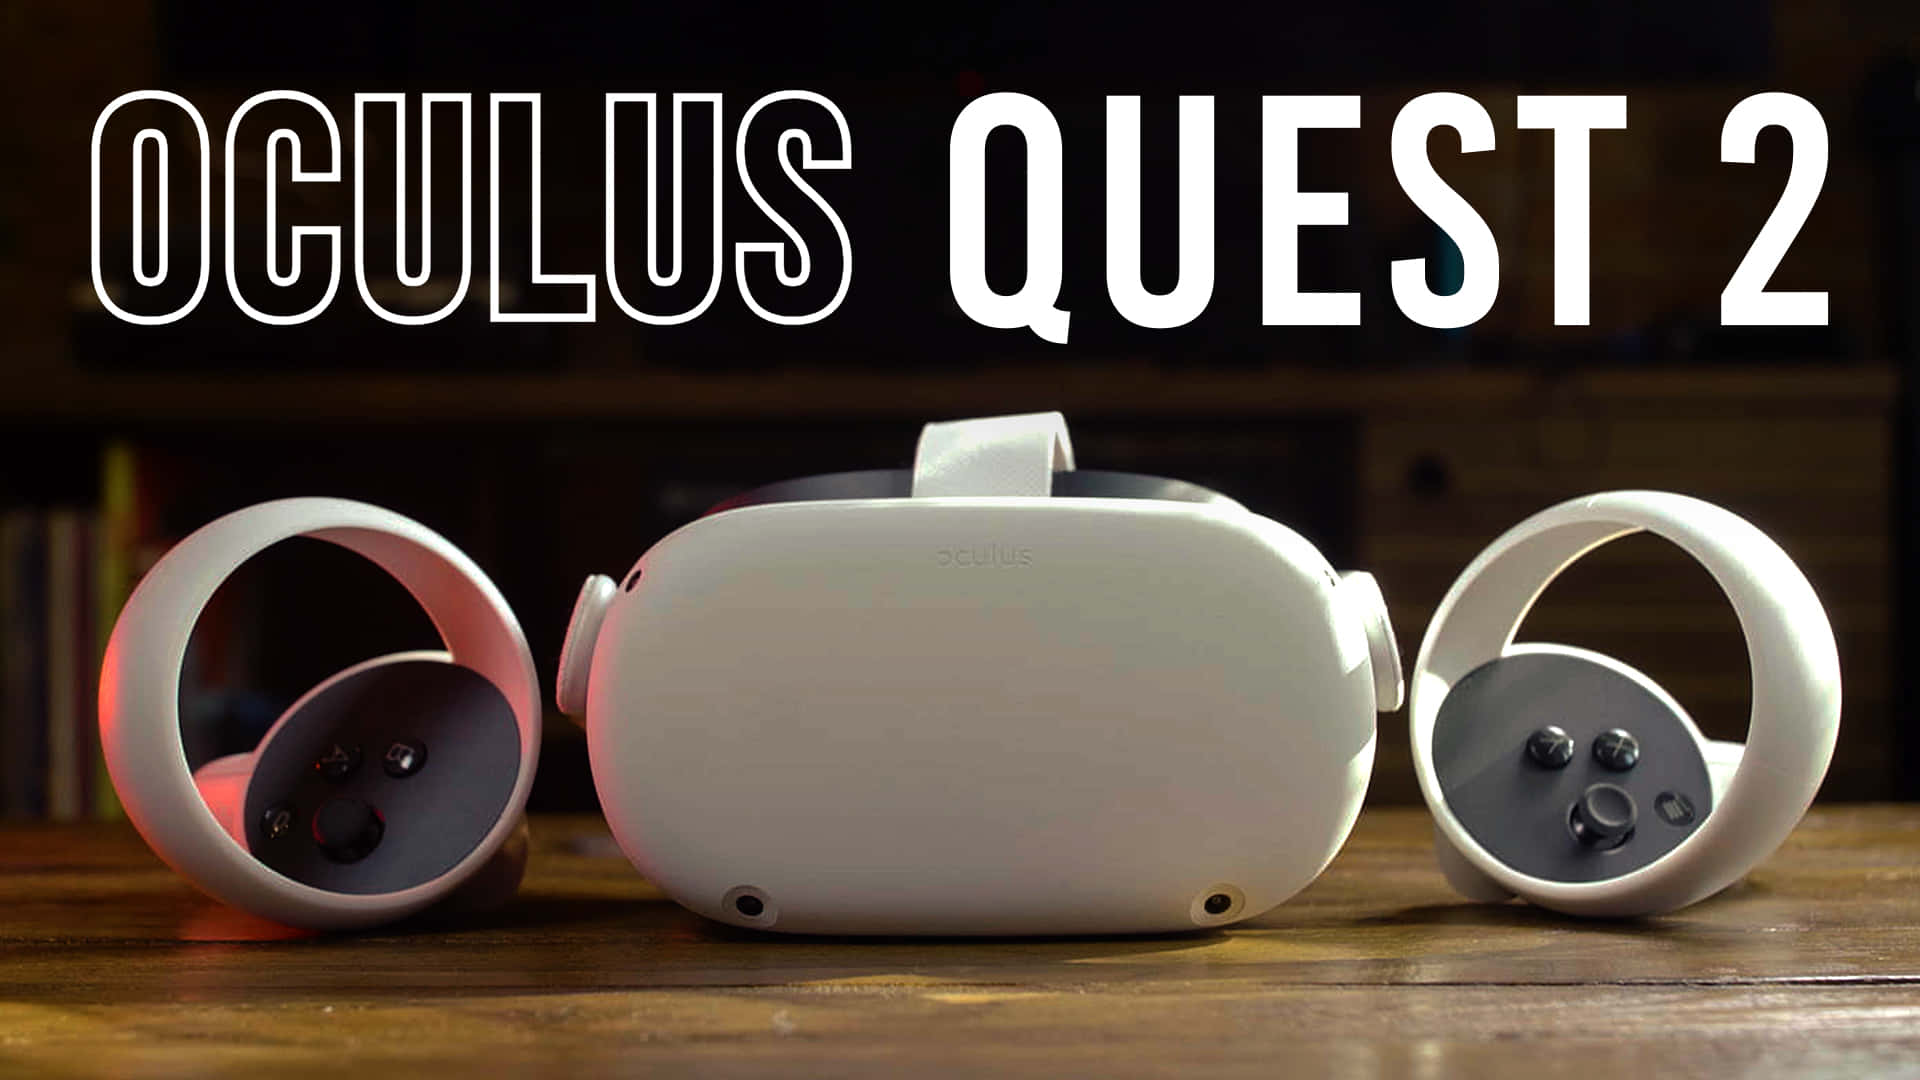 Oculus Quest 2 Pictures